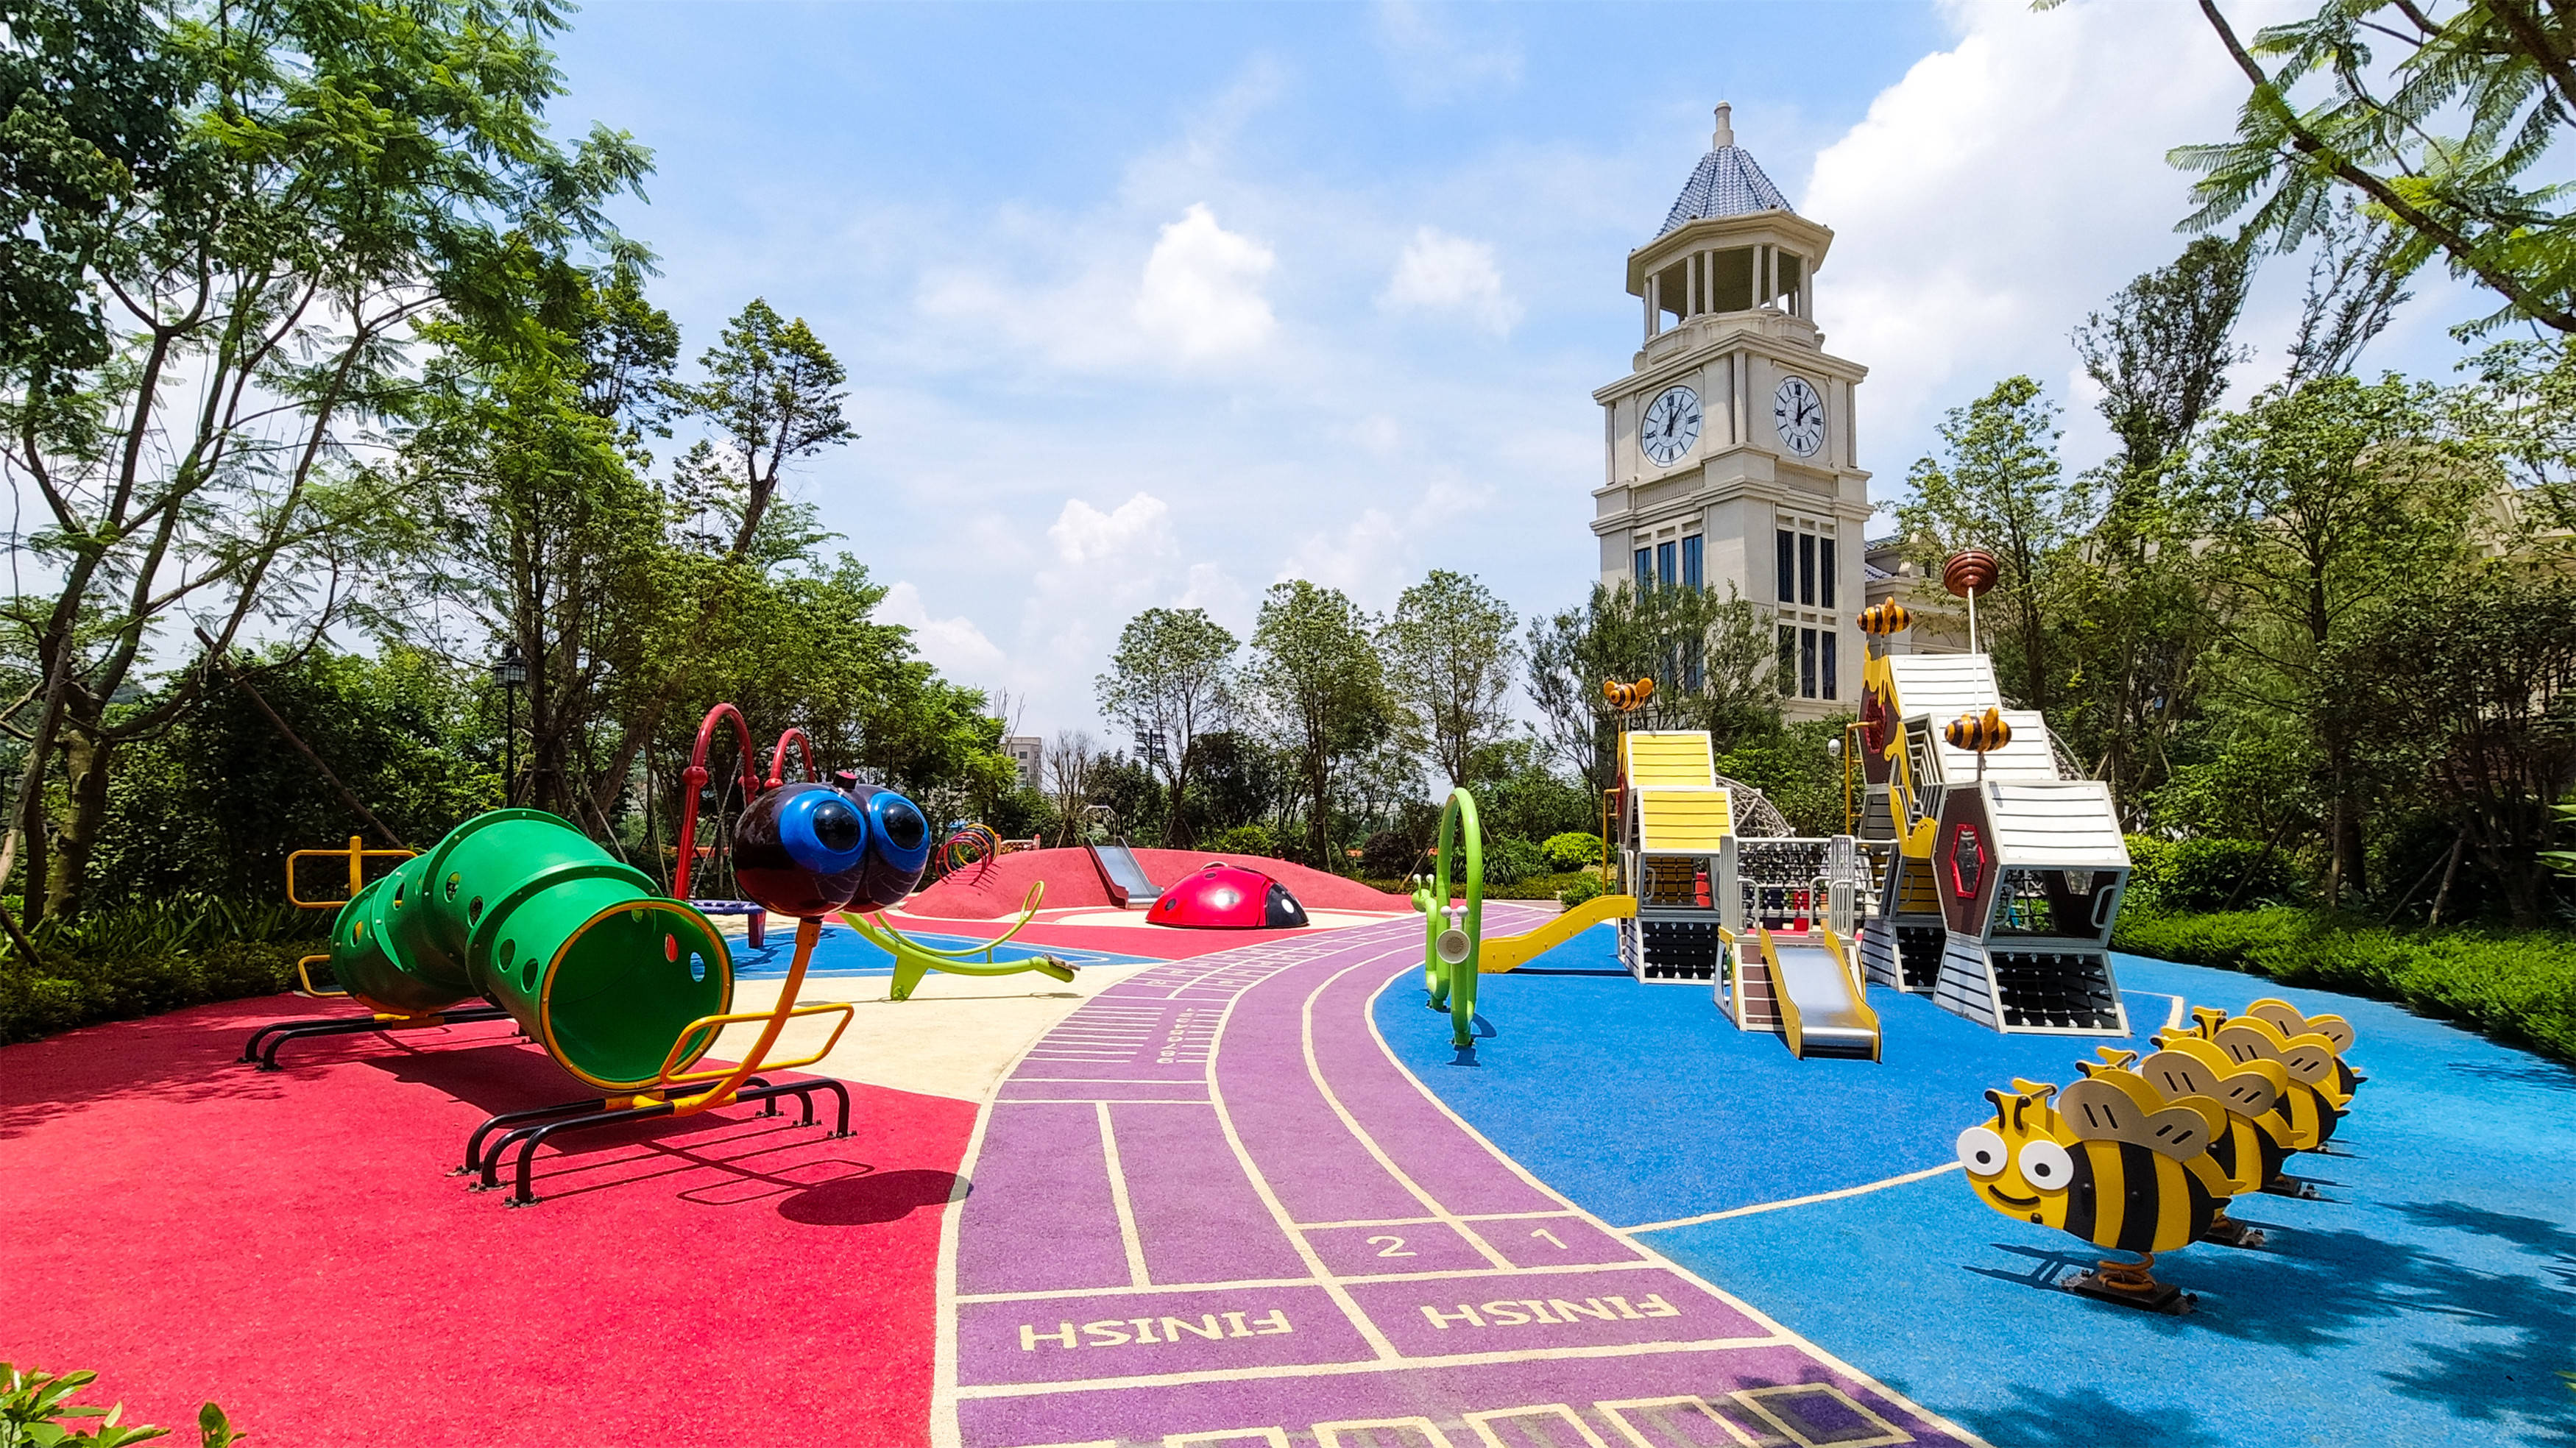 儿童游乐场如何巧用设计实现与社区环境的融合?